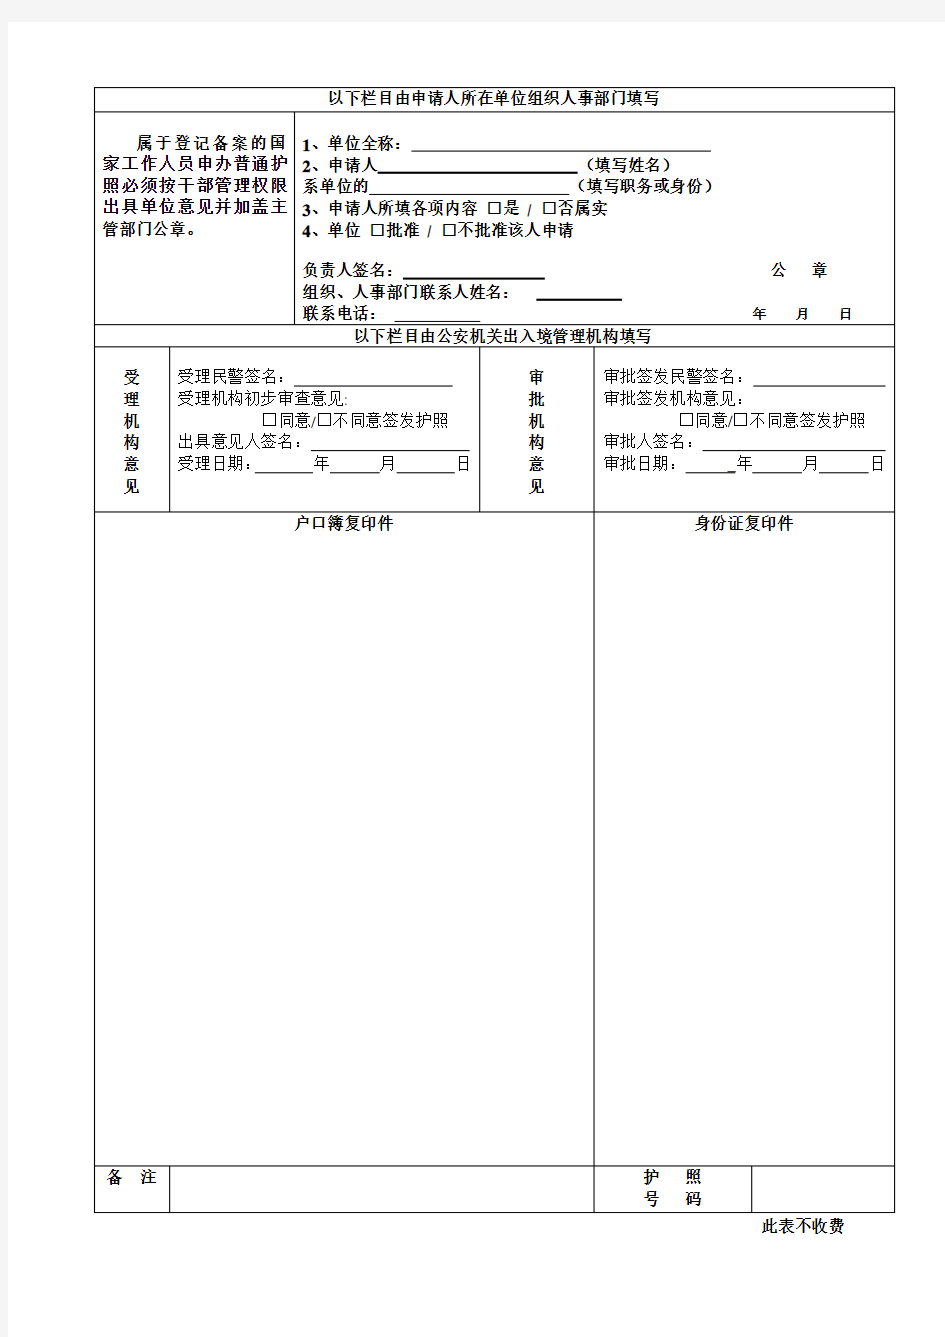 中国公民因私出国申请表